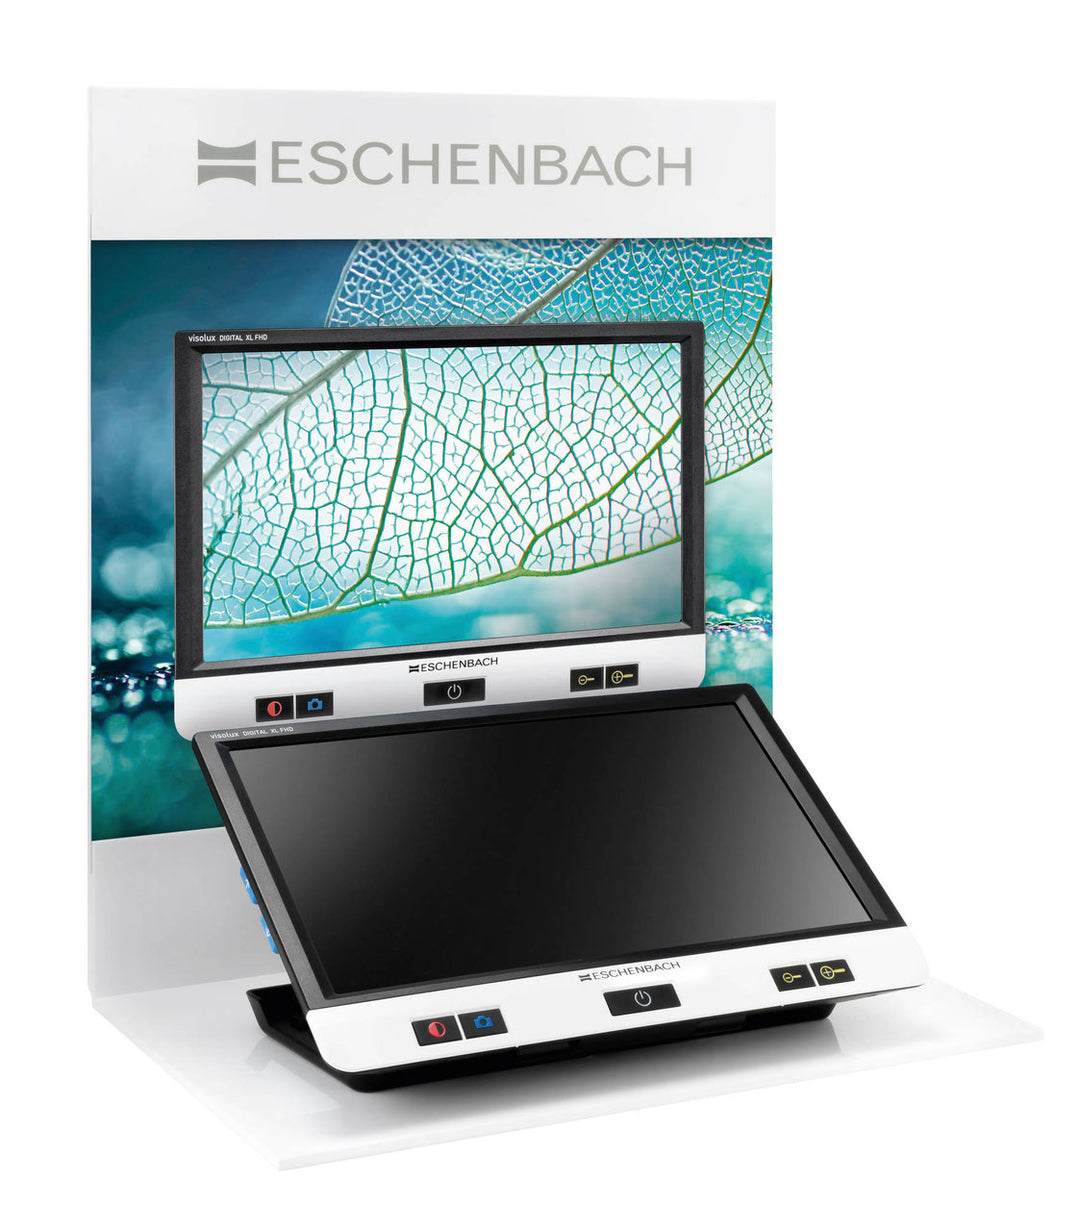 Lupa Visolux Digital XL FHD Eschenbach - Lens For Vision